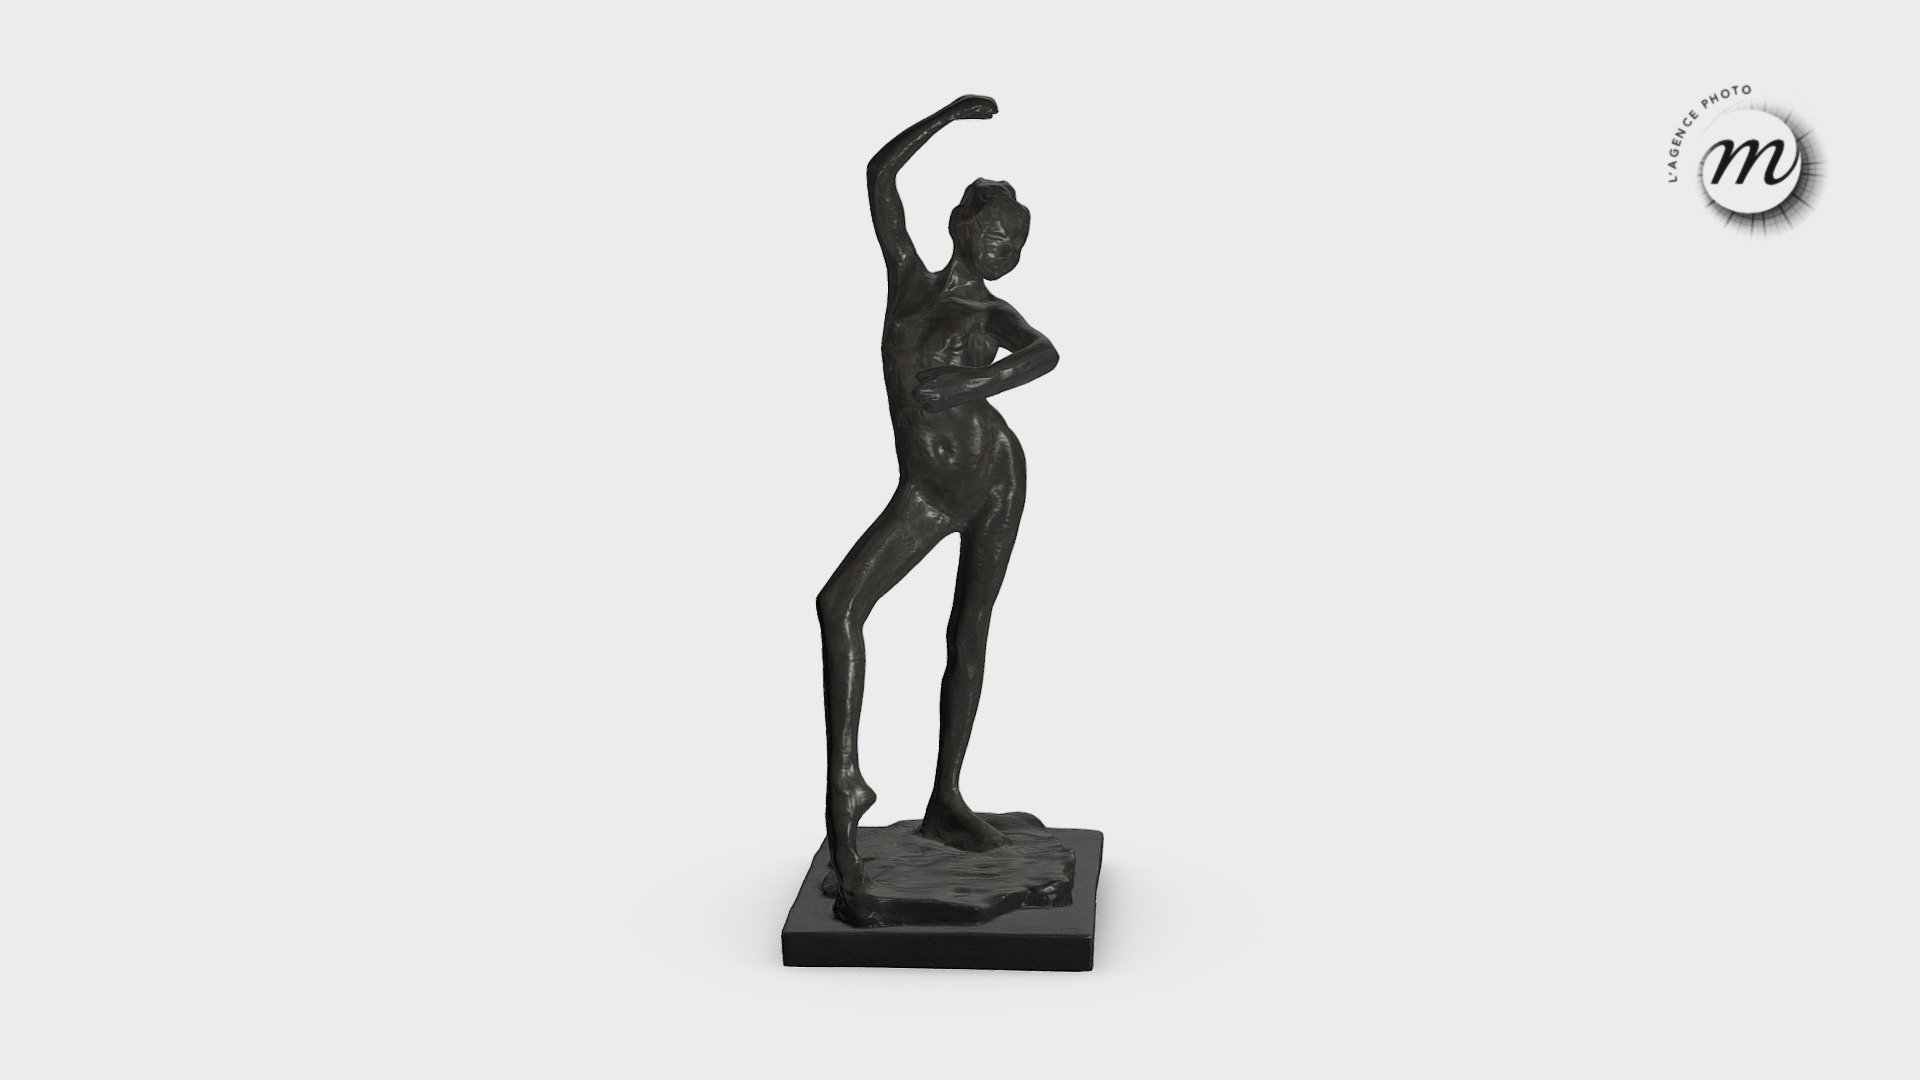 Danseuse espagnole

Edgar Degas (1834-1917)

PF006289

LIEU DE CONSERVATION DE L’ORIGINAL : Paris, musée d'Orsay

Original en bronze 

Reproduction Rmn-GP en bronze

DIMENSIONS : Hauteur : 42 cm Largeur : 20 cm Profondeur : 13 cm

Ateliers d’art des musées nationaux

L'Agence Photo

This is a light 3D model for web display. To use the high quality model contact agence.photo@rmngp.f

© Rmn-GrandPalais/Reproduction 3D Rmn-GP - Danseuse espagnole - Edgar Degas (1834-1917) - 3D model by Rmn-Grand Palais (@francecollections) 3d model